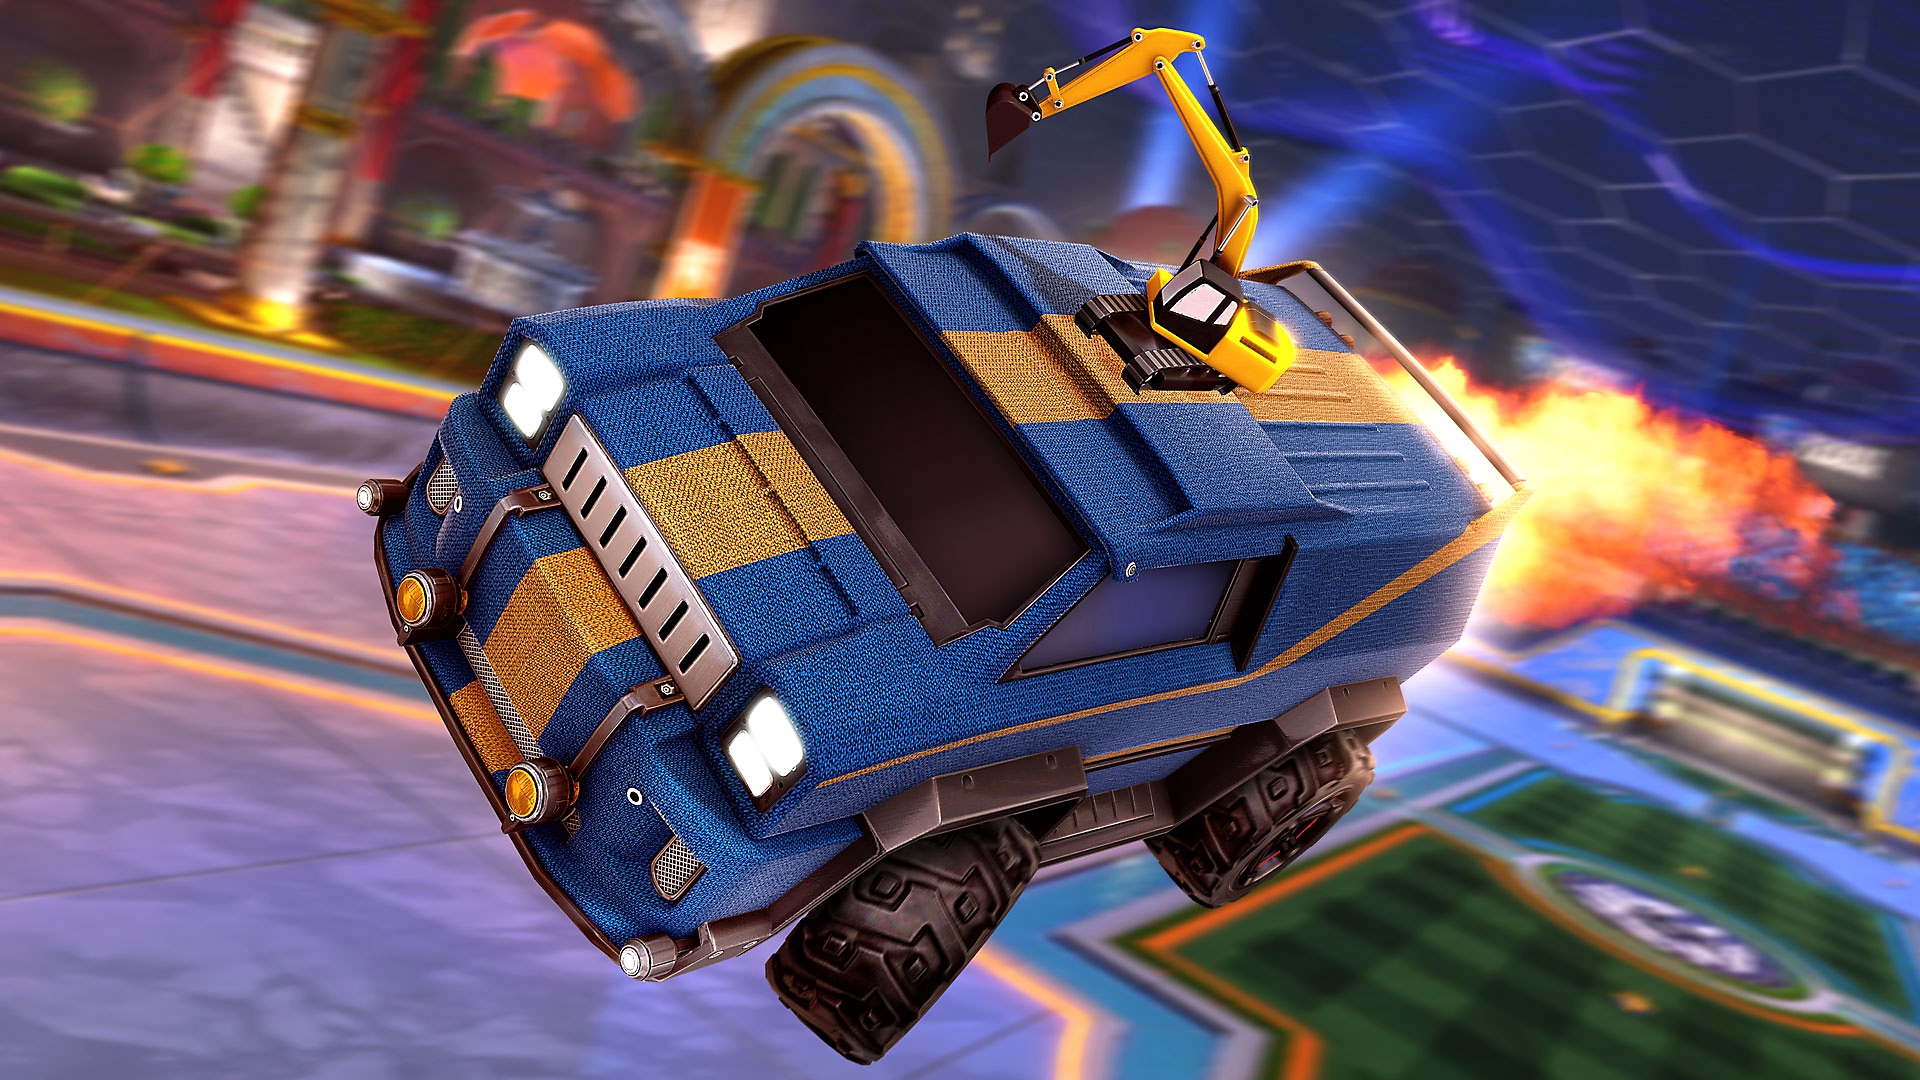 Rocket League – skjermbilde som viser en blå varebil med en gul racingstripe